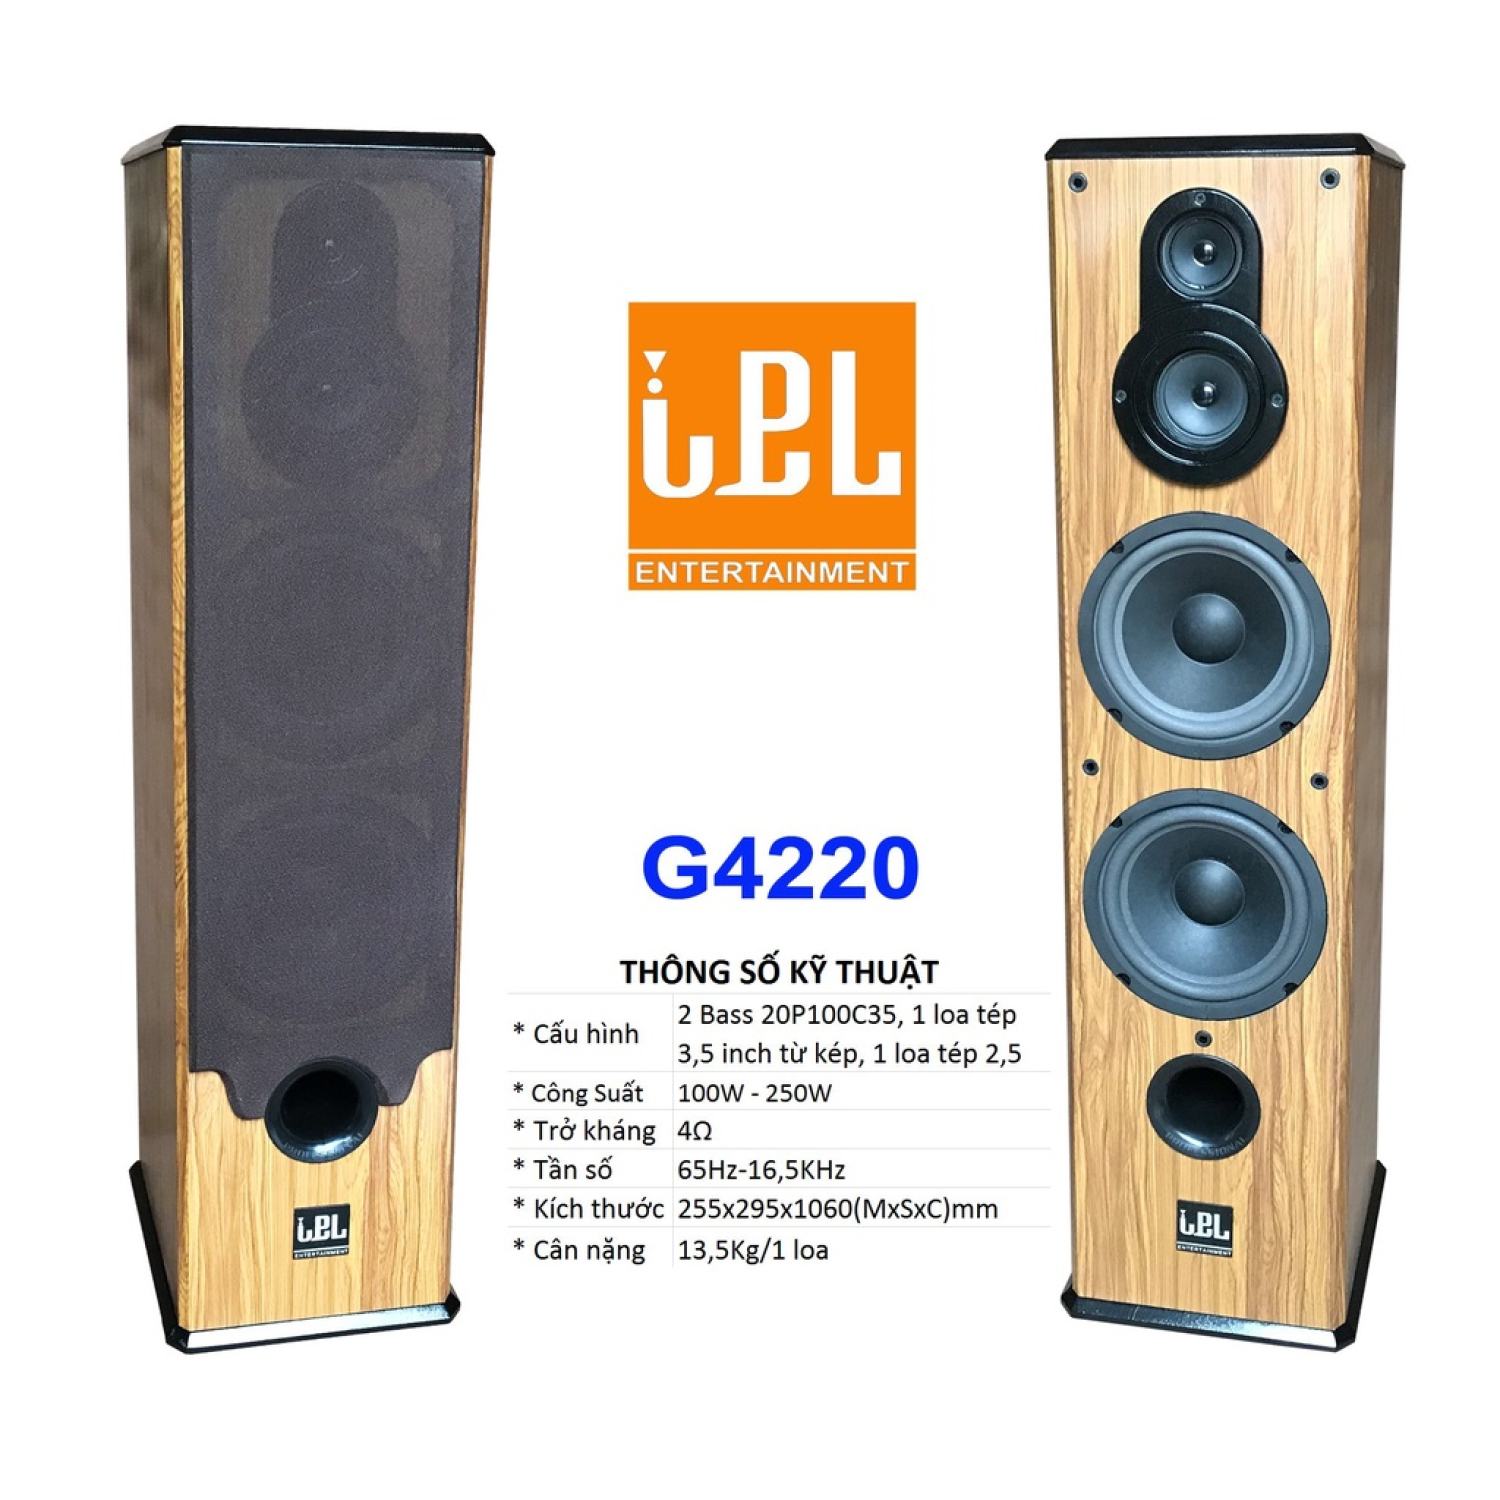 Loa cây Karaoke Gia đình IPL G4220 4 bass 20, chất lượng cao